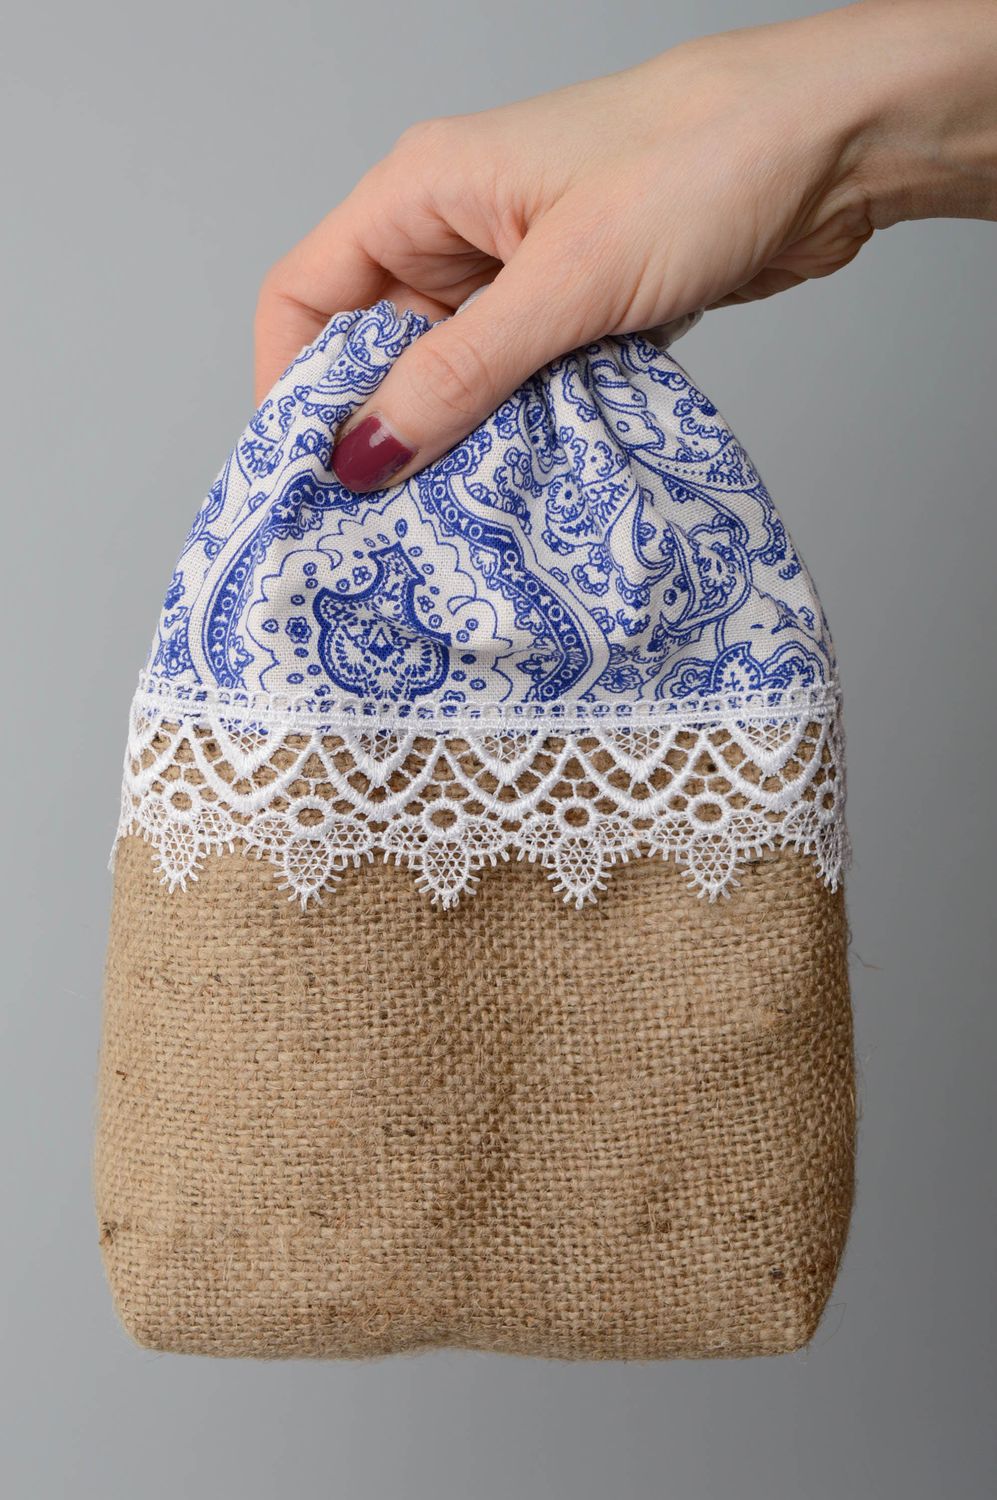 Текстильная косметичка сумка из мешковины с кружевами фото 3